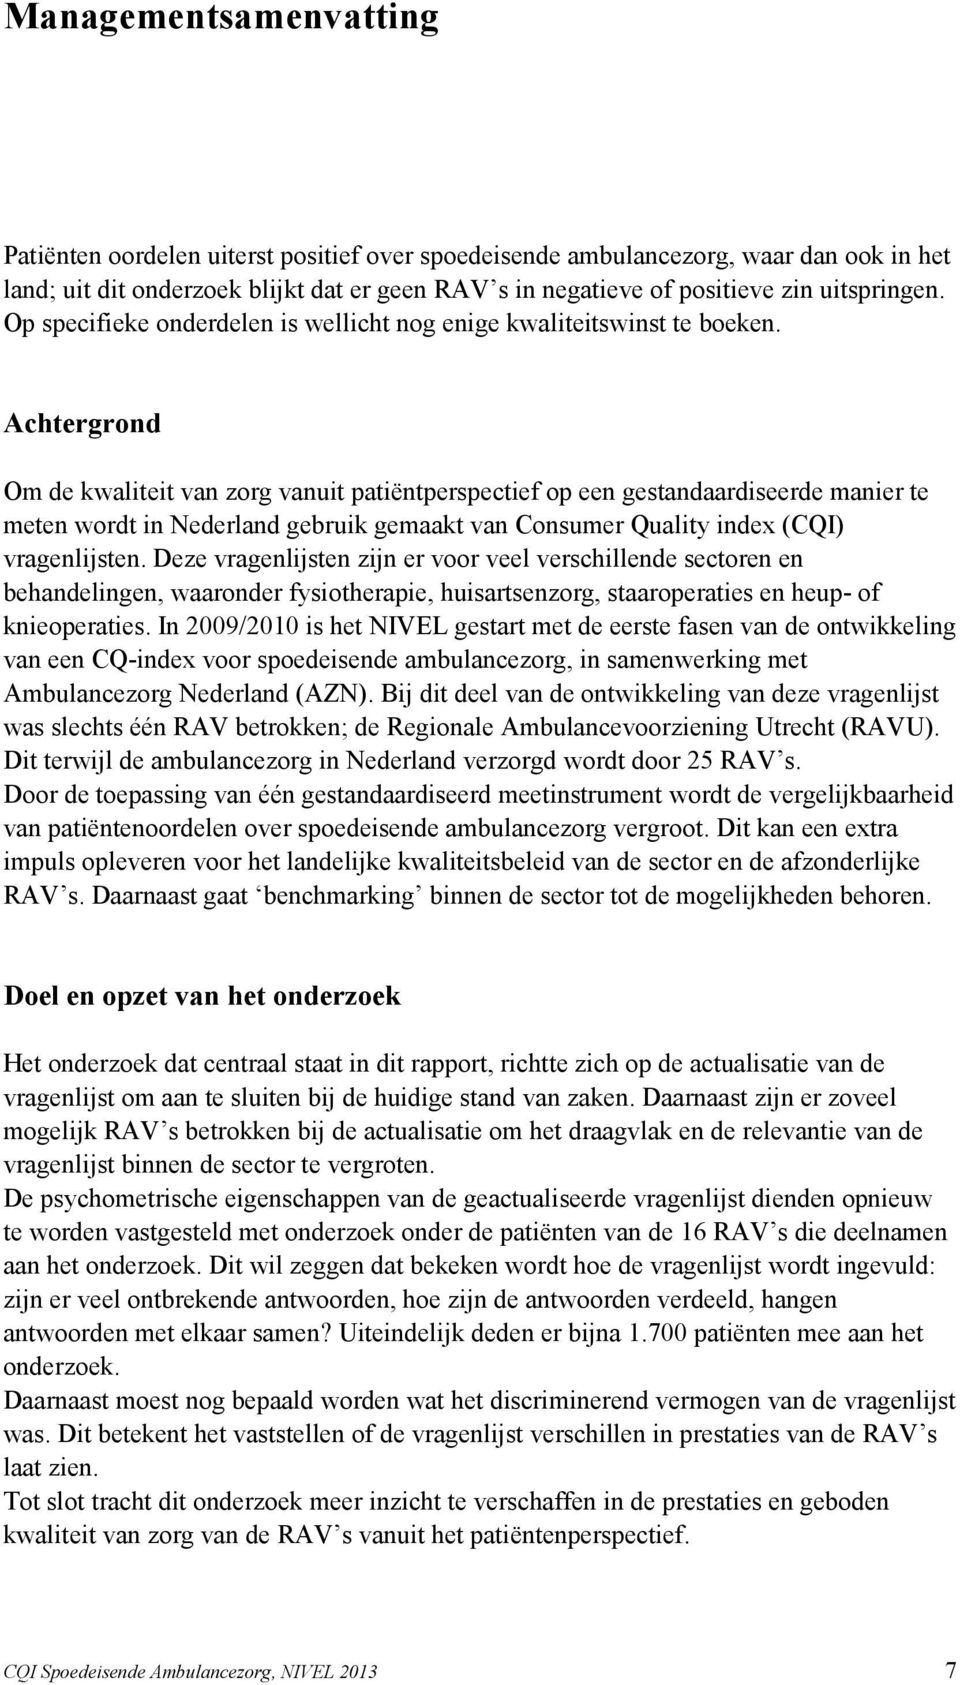 Achtergrond Om de kwaliteit van zorg vanuit patiëntperspectief op een gestandaardiseerde manier te meten wordt in Nederland gebruik gemaakt van Consumer Quality index (CQI) vragenlijsten.